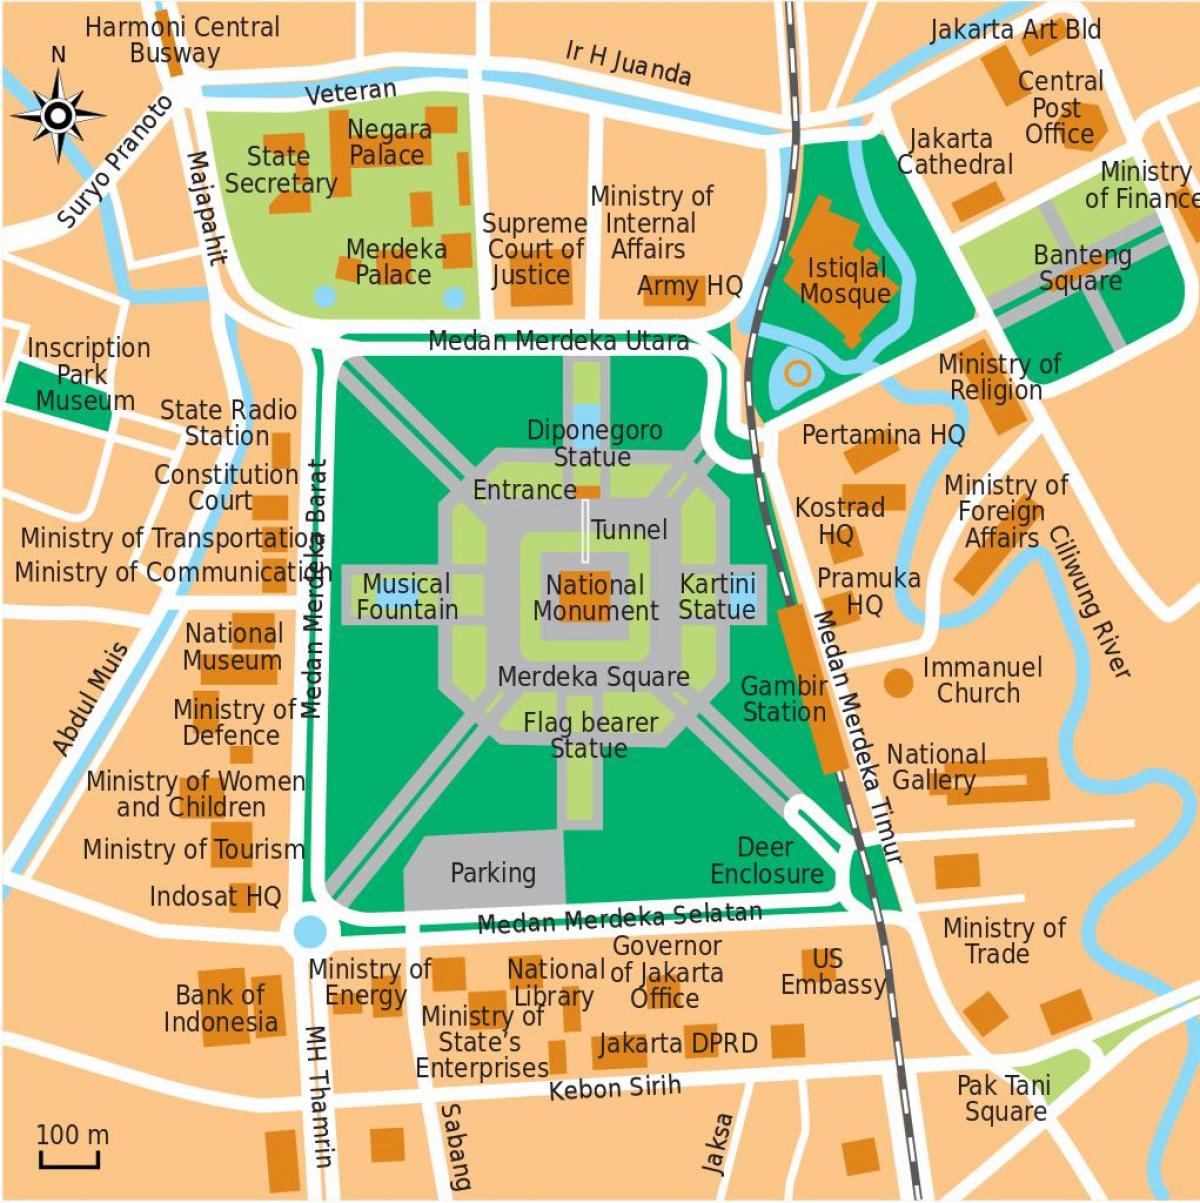 harta e zyrës Xhakartë